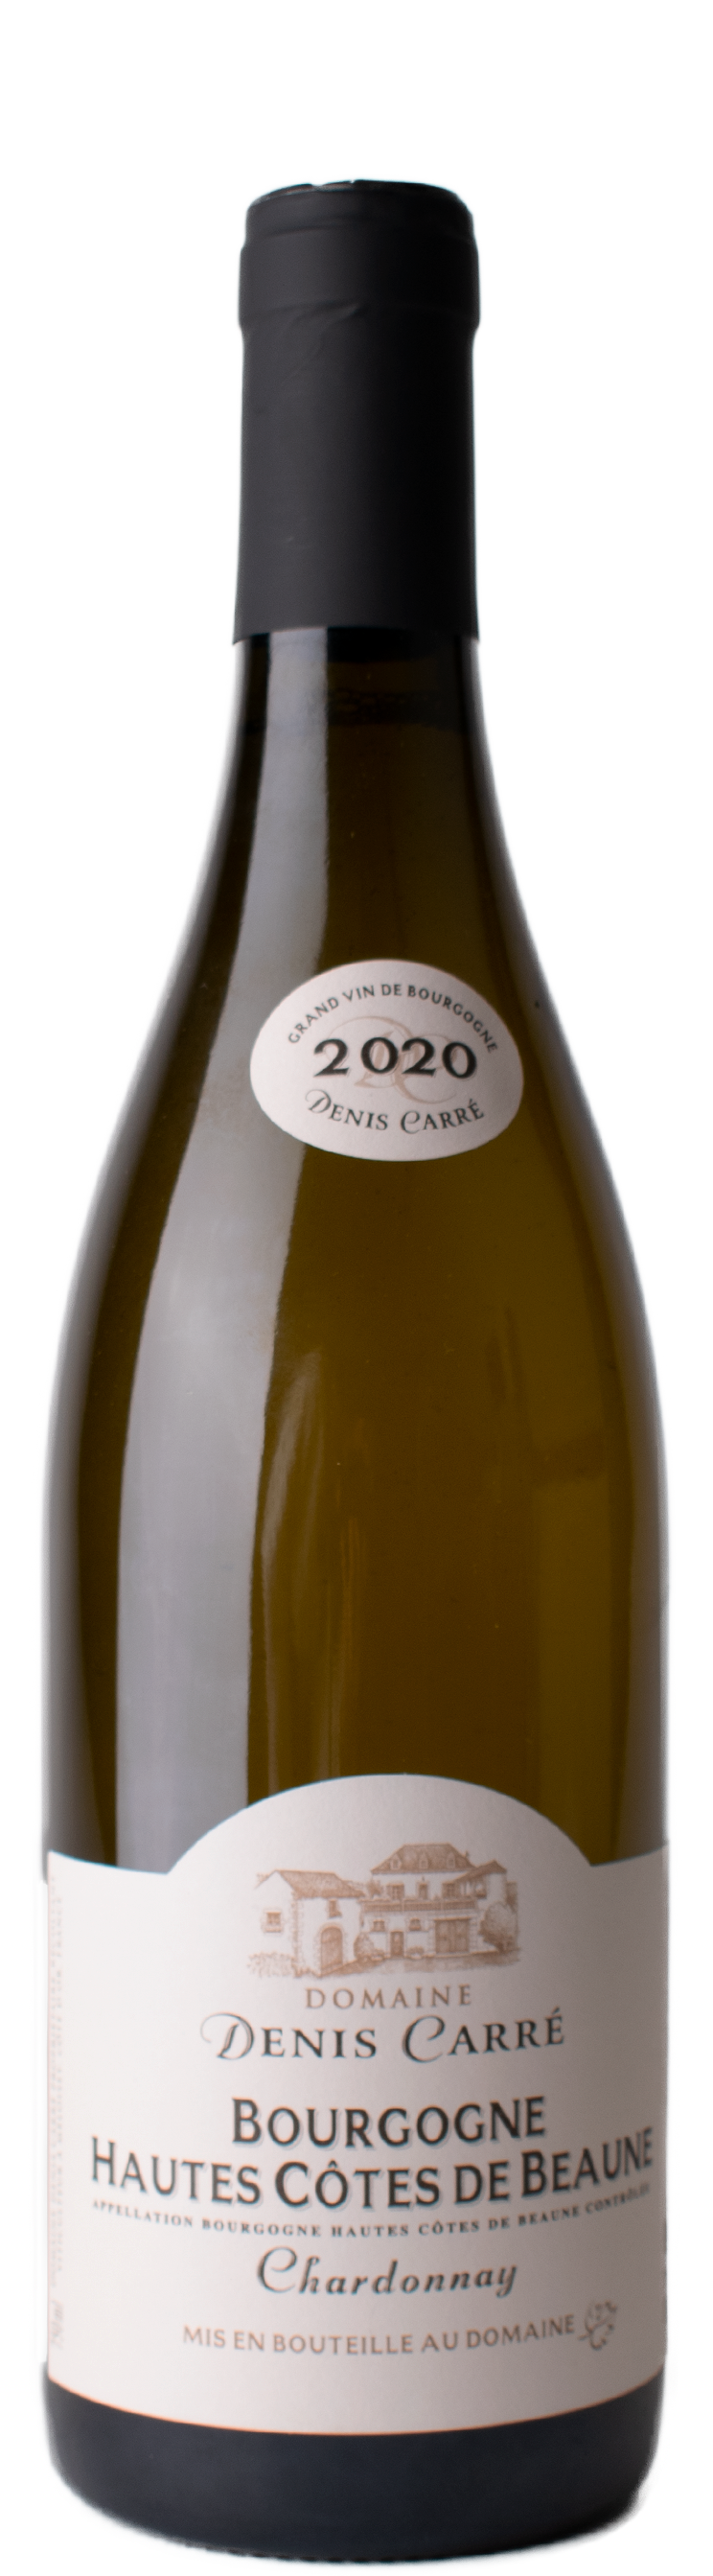 Bourgogne Hautes Côtes de Beaune blanc 2020